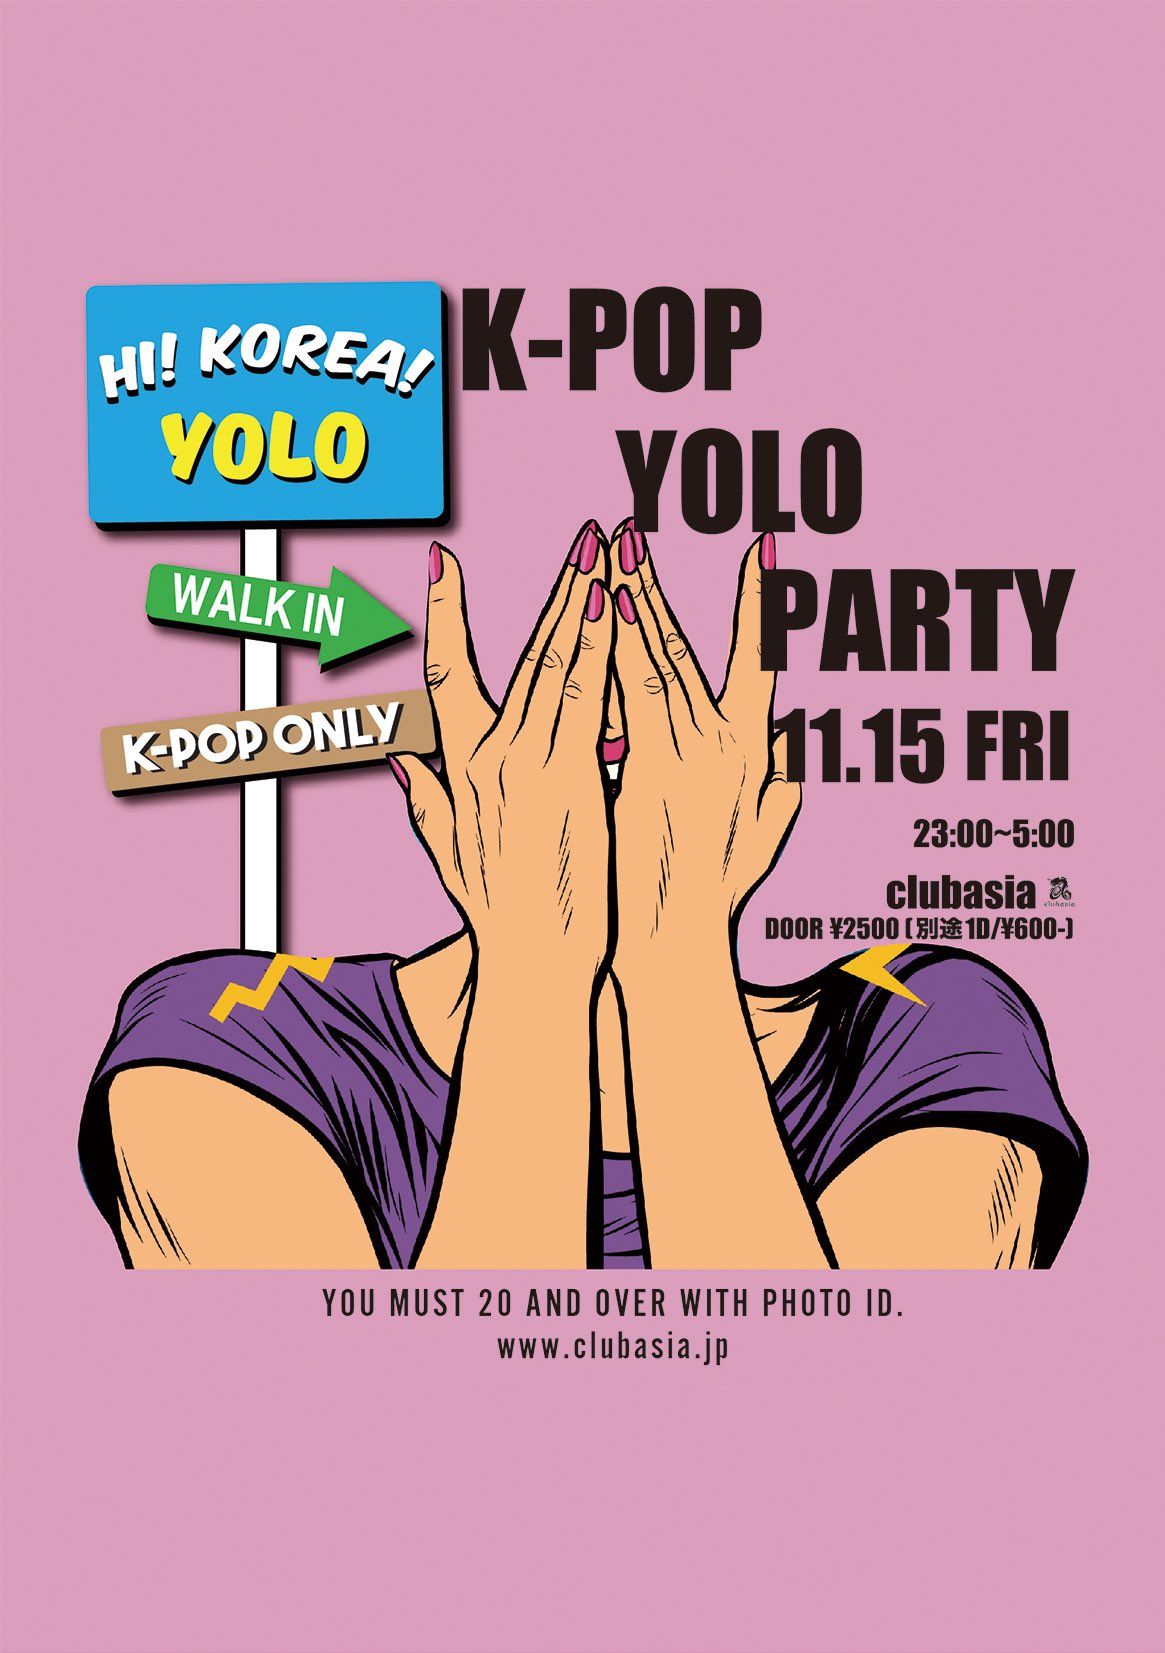 K-POP PARTY "YOLO"